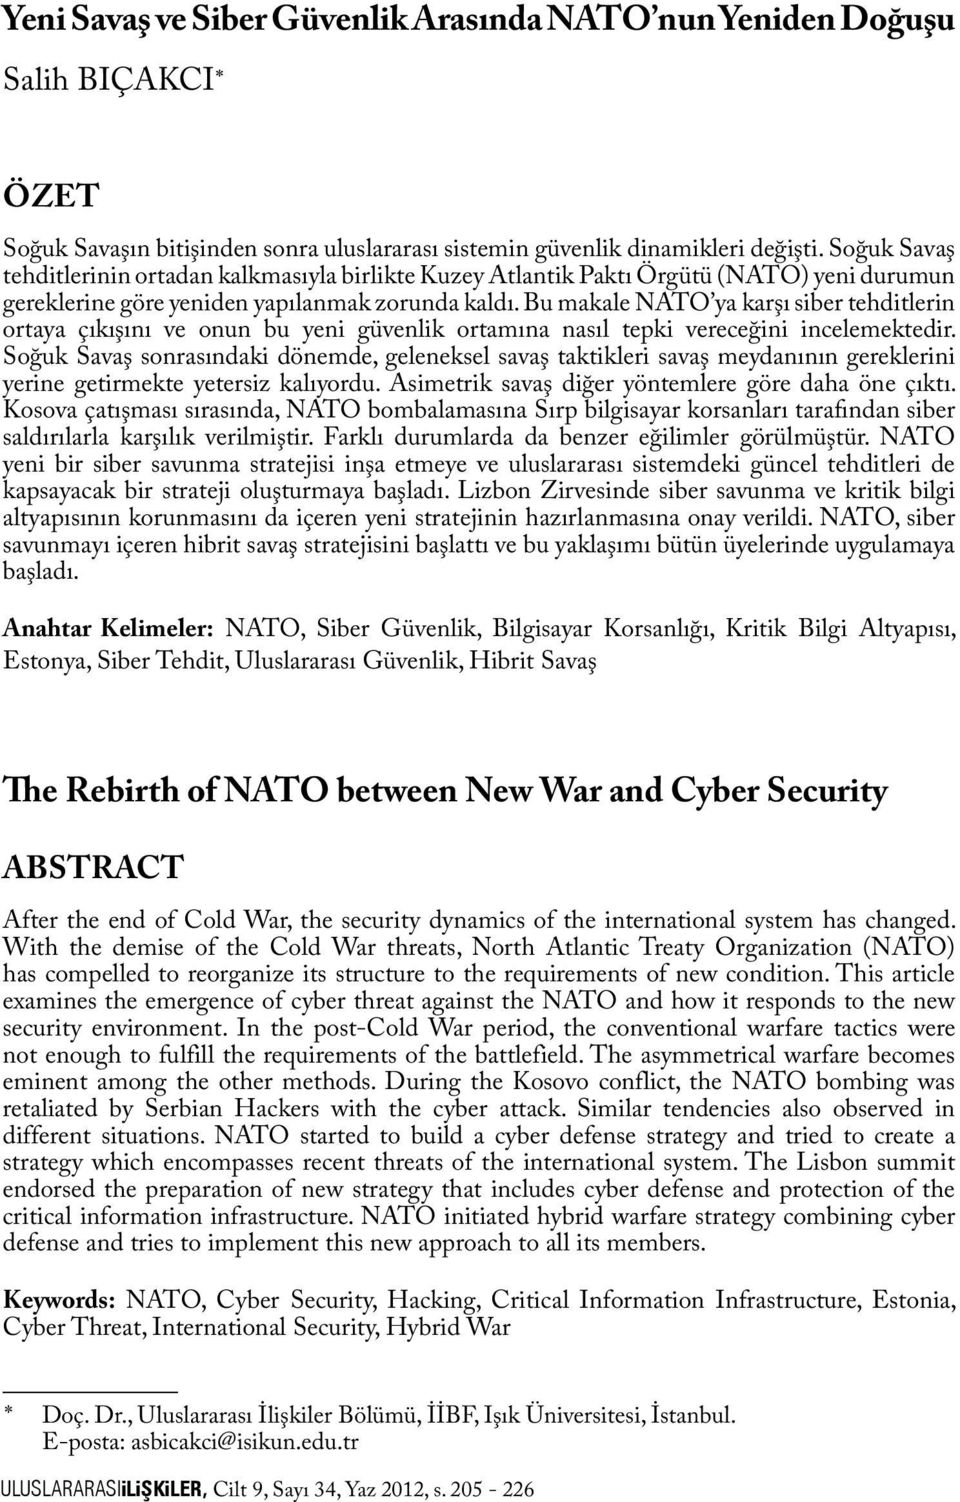 Bu makale NATO ya karşı siber tehditlerin ortaya çıkışını ve onun bu yeni güvenlik ortamına nasıl tepki vereceğini incelemektedir.